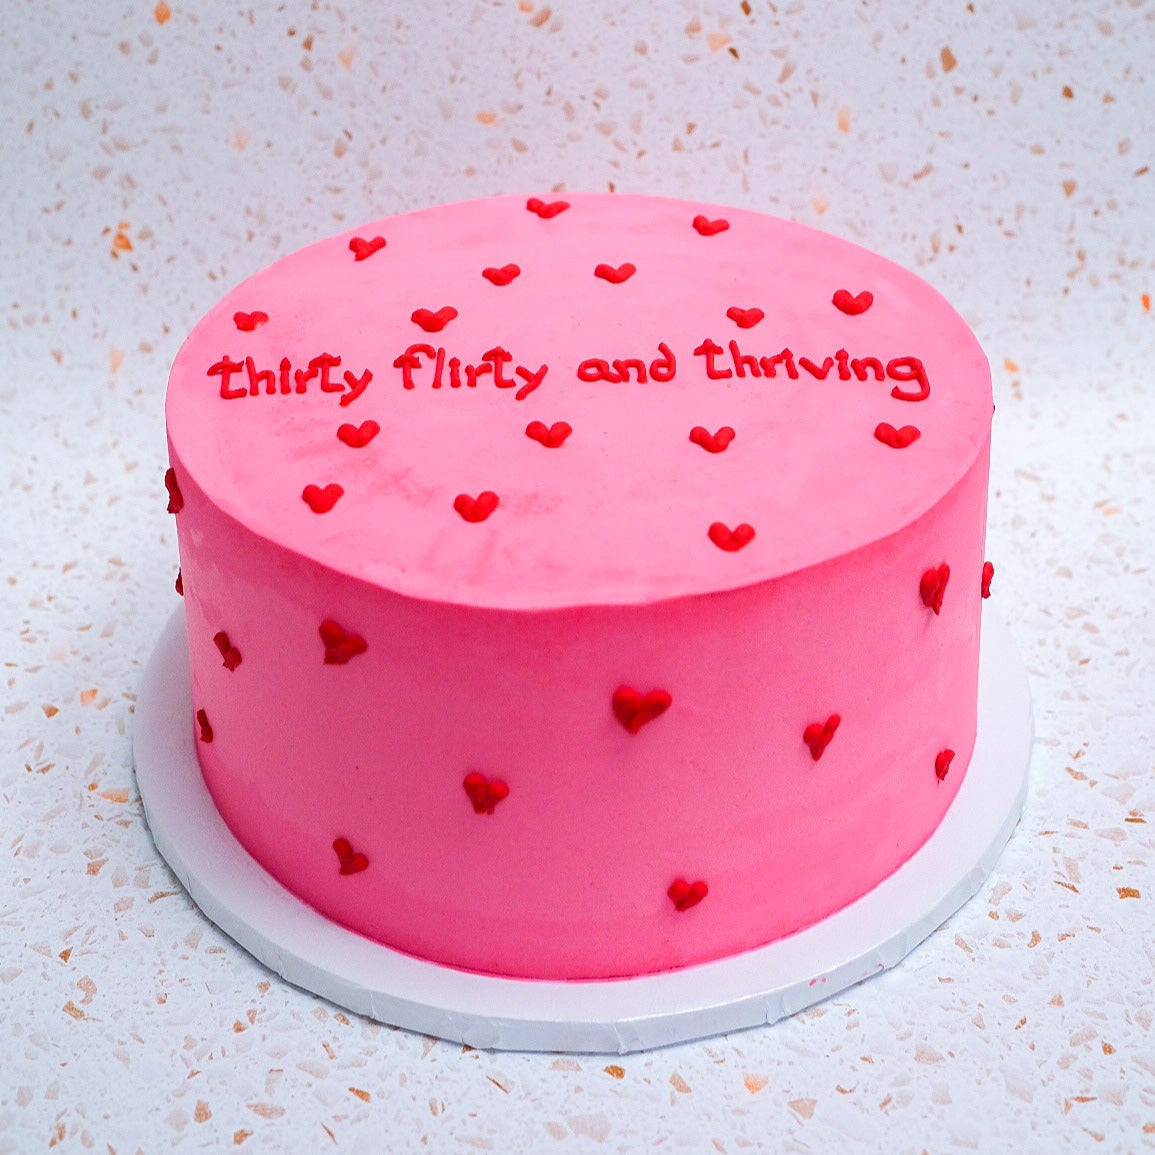 Ravishing Red Velvet Cake| Heart Shaped Red Velvet Cake | CakeBee